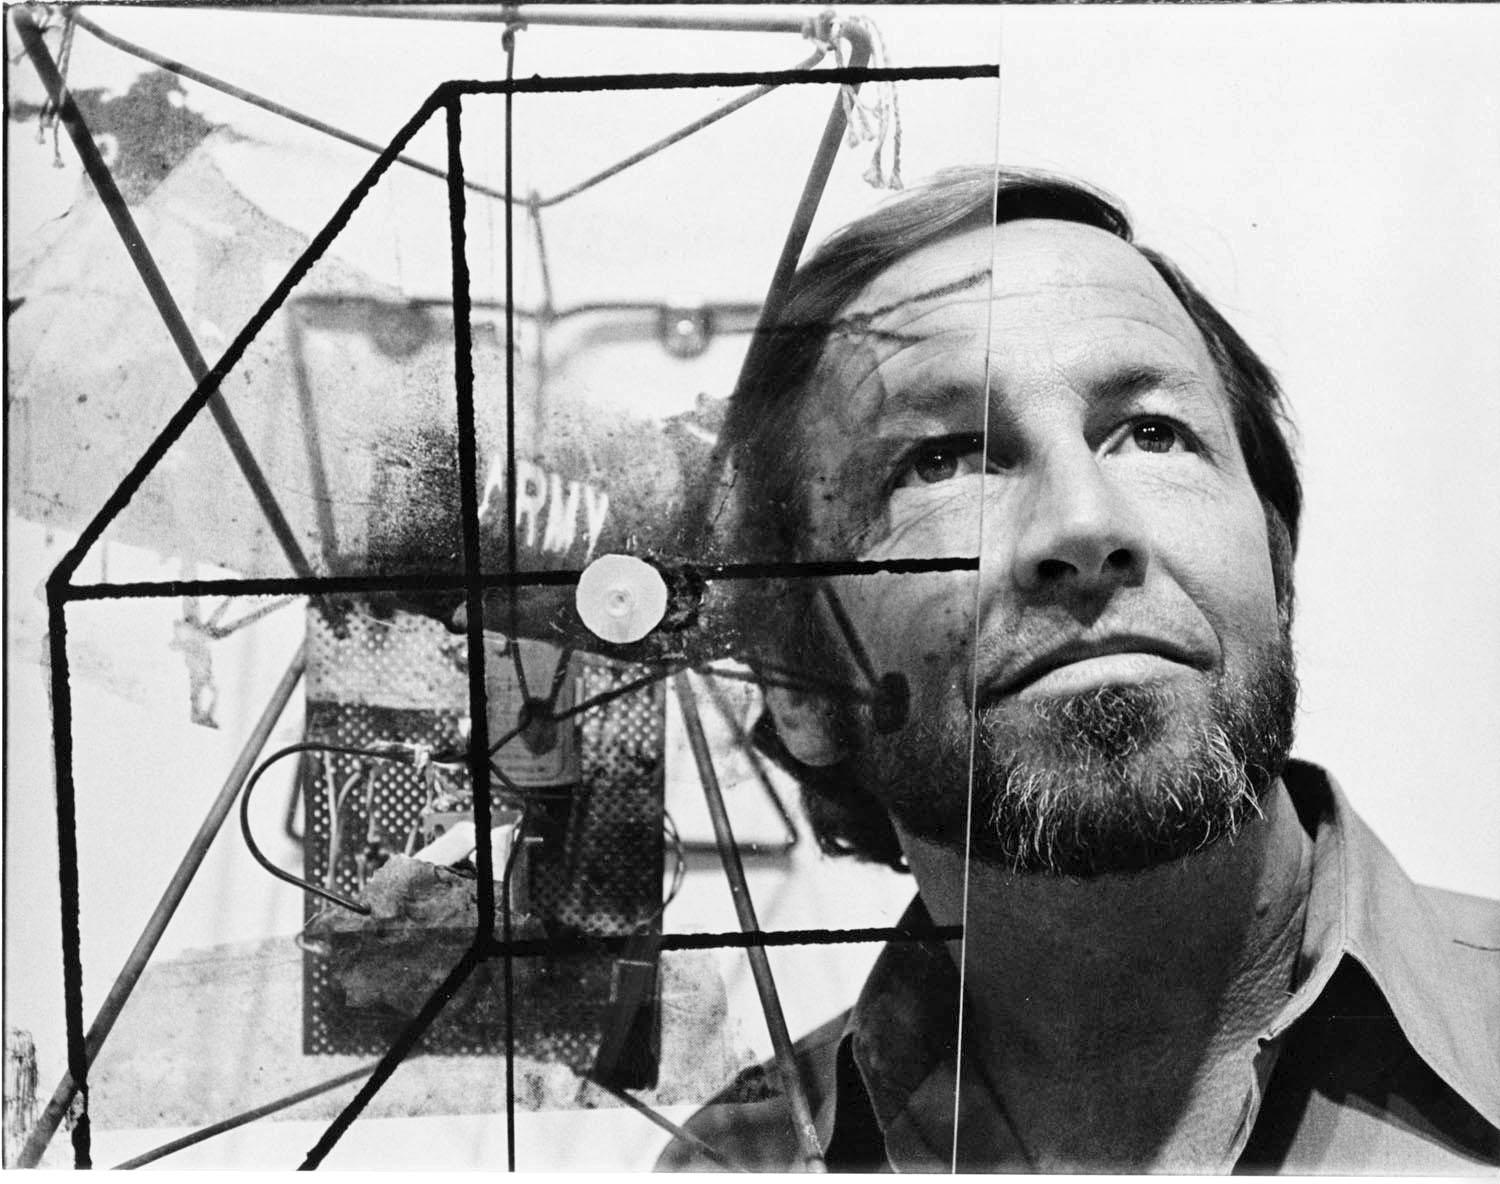 Der Künstler Robert Rauschenberg in seinem Atelier, signiert von Jack Mitchell